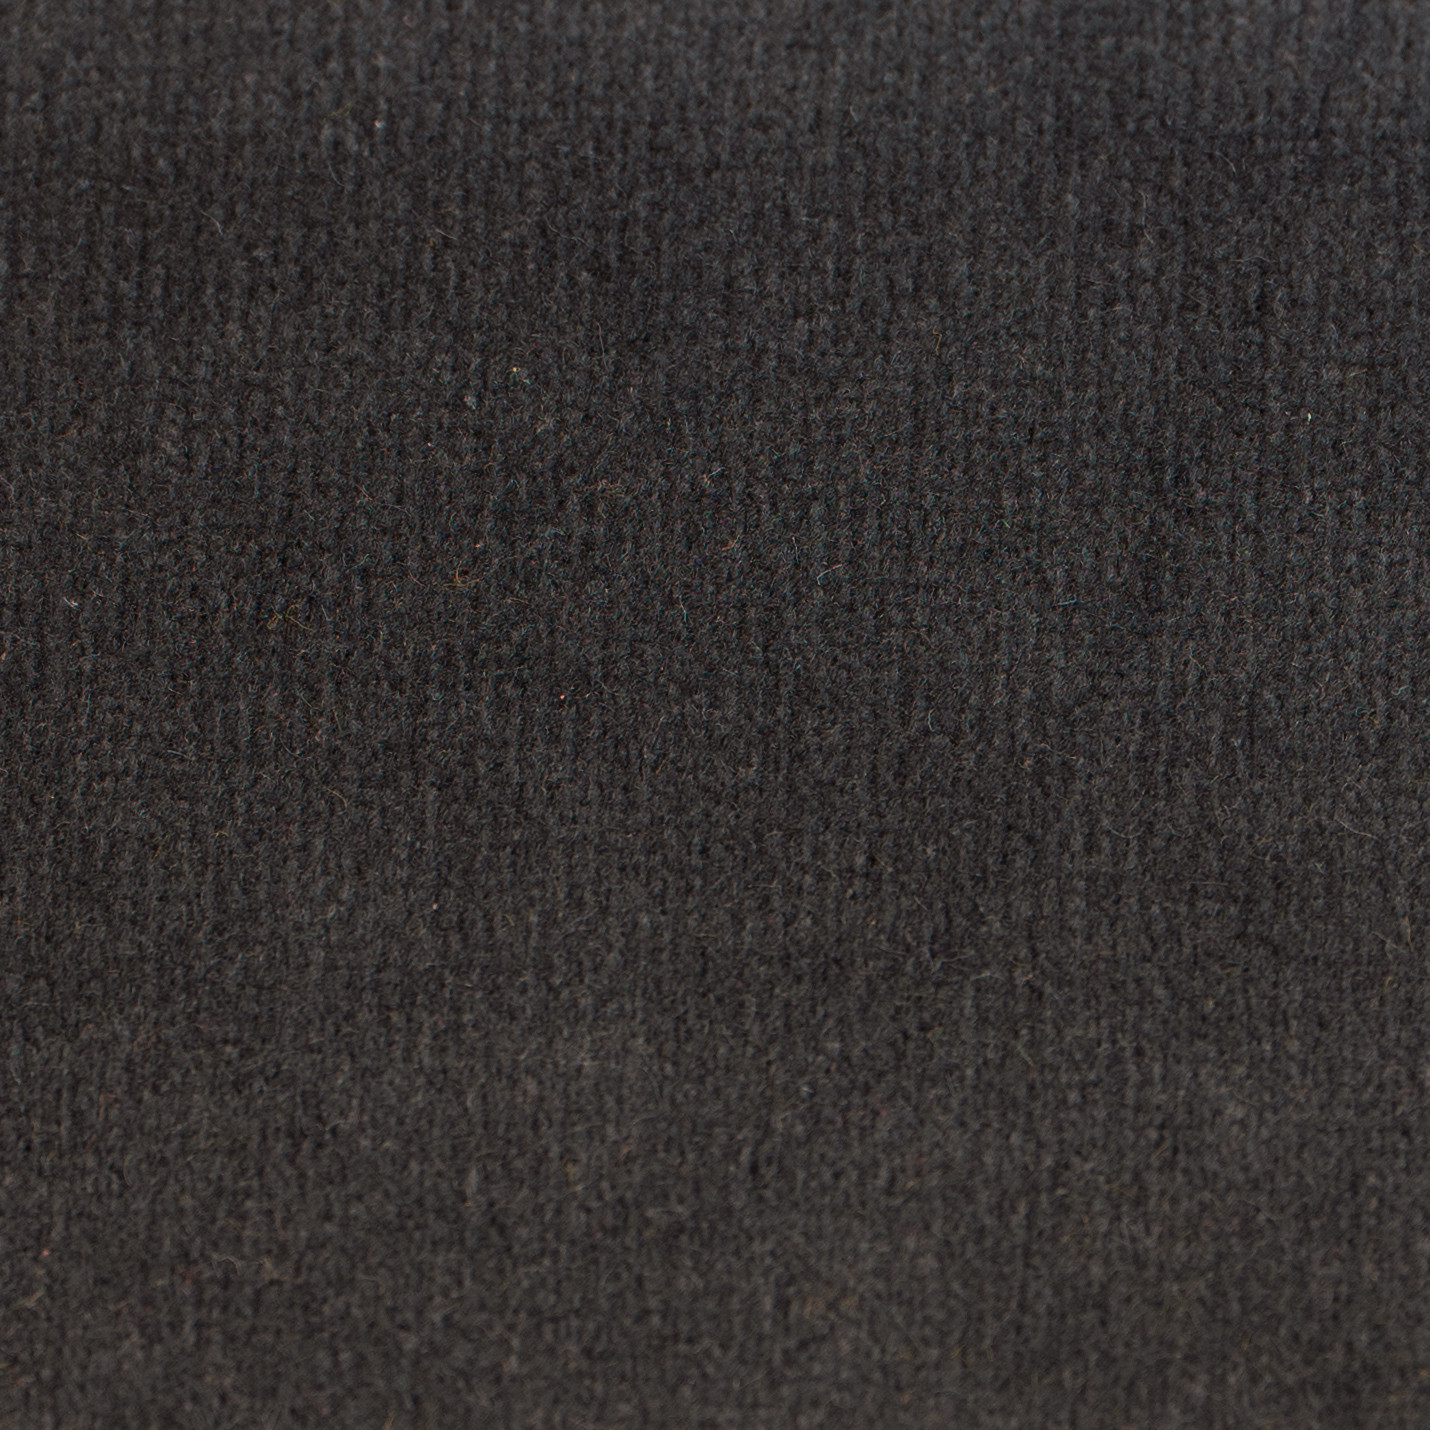 TEBQ020 Antracite con bordino grigio chiaro BDP03 - Tessuto Bouquet